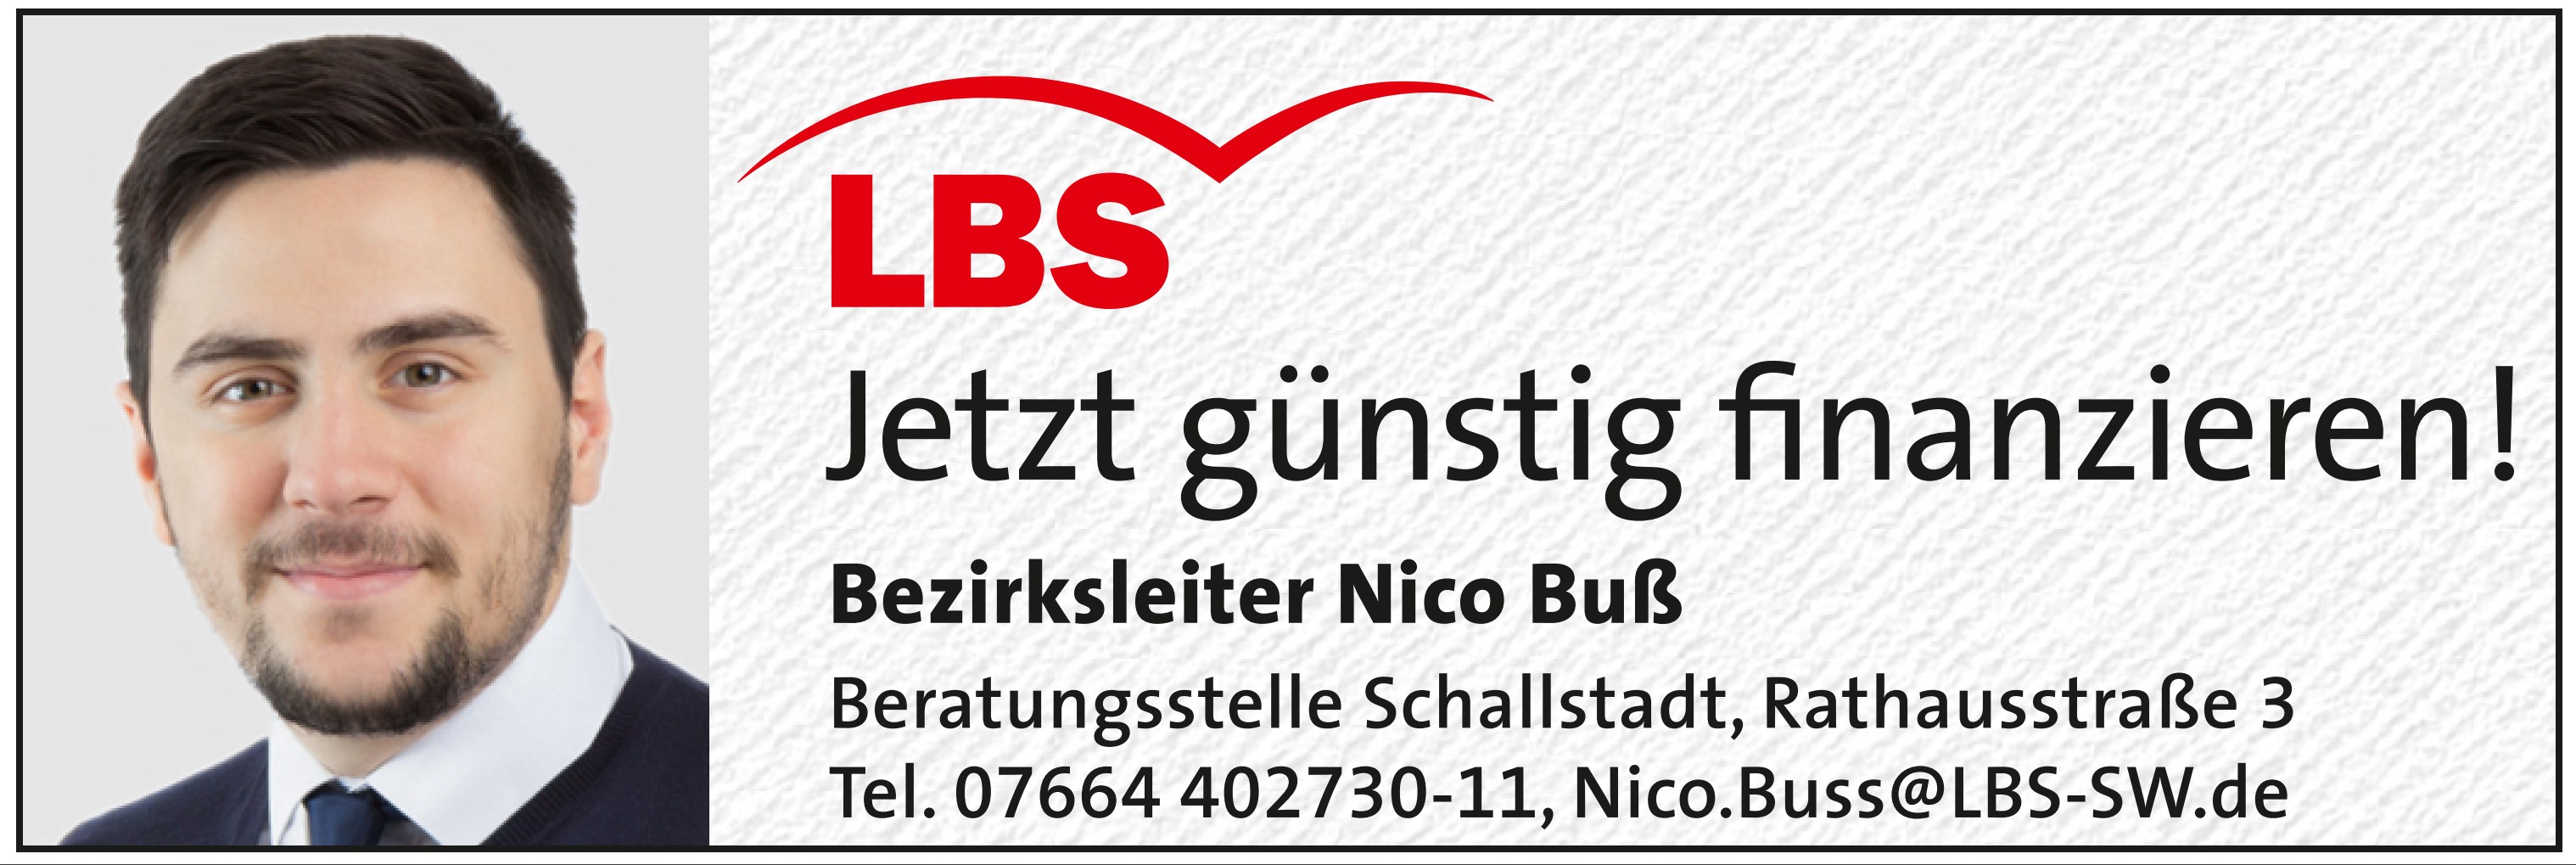 LBS-Nicu-Buss-Logo.jpg